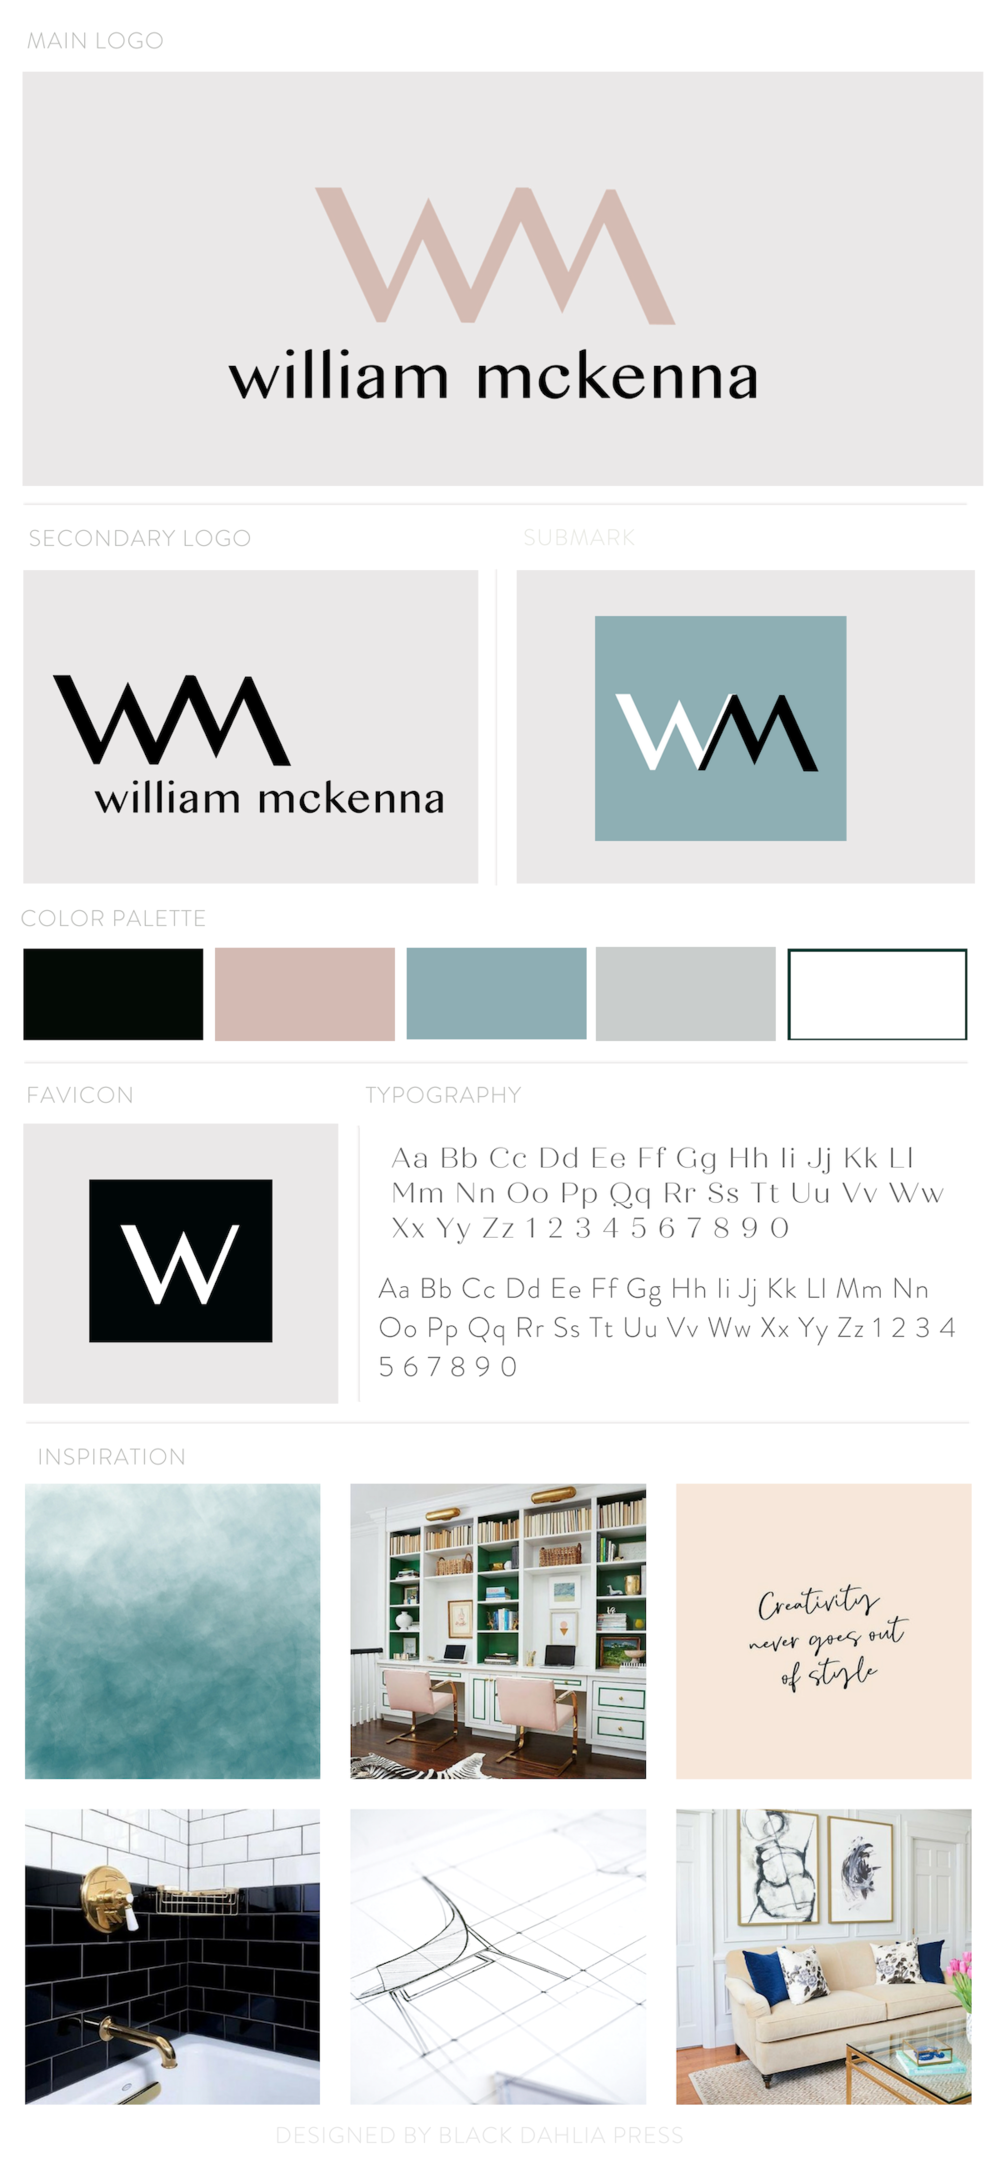 William McKenna Pre-made Brand